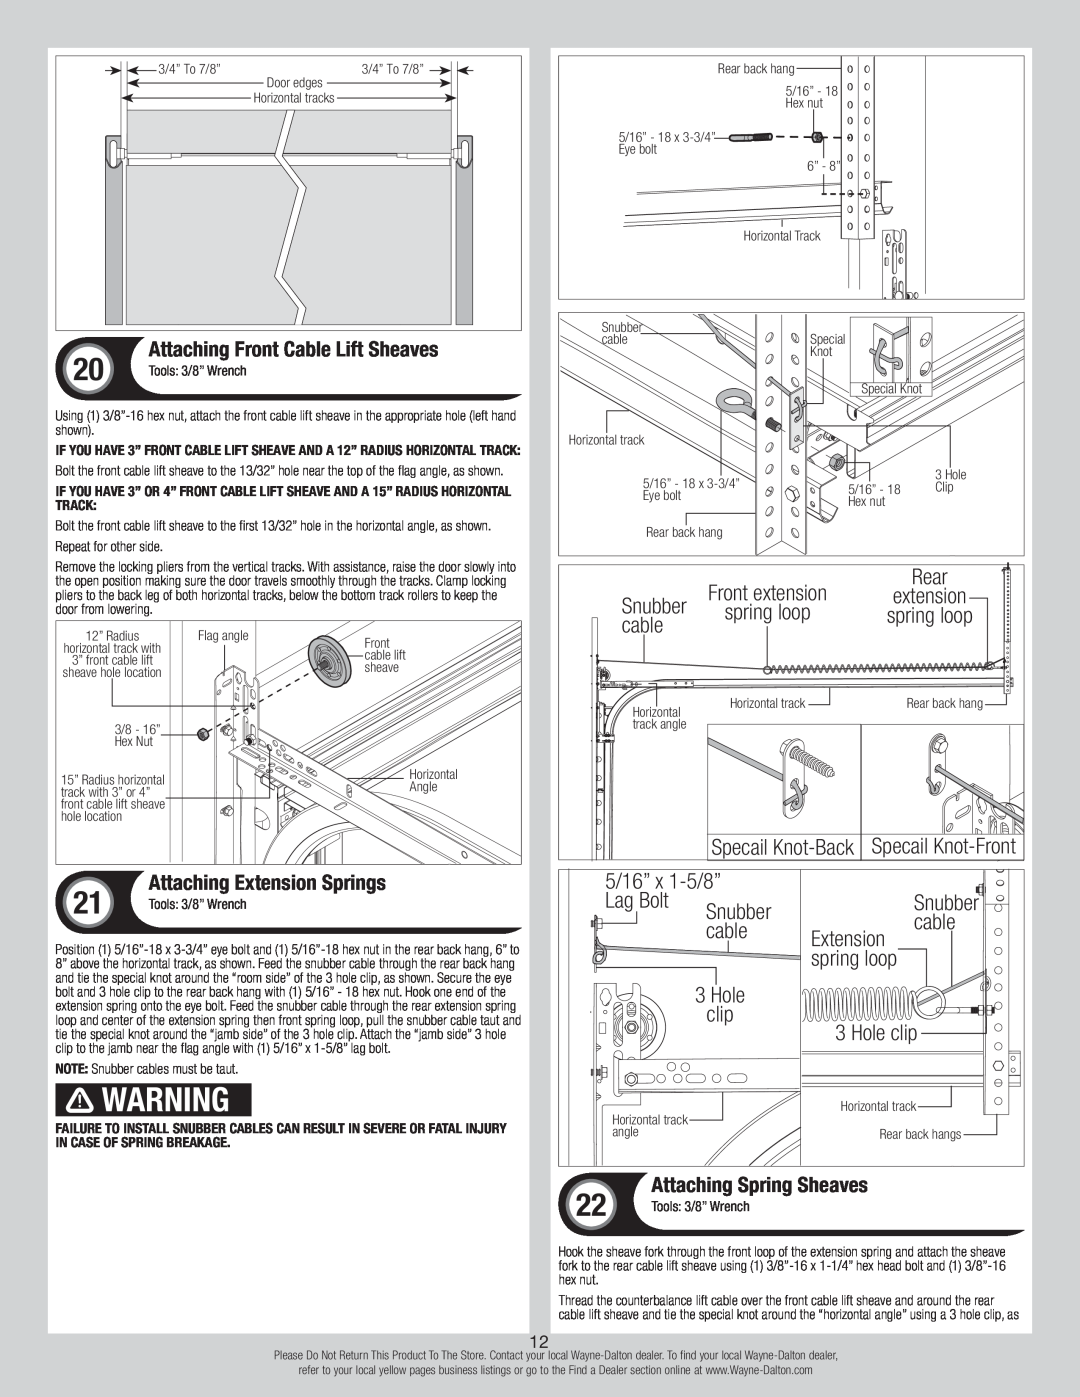 Wayne-Dalton 8700 installation instructions Snubber 